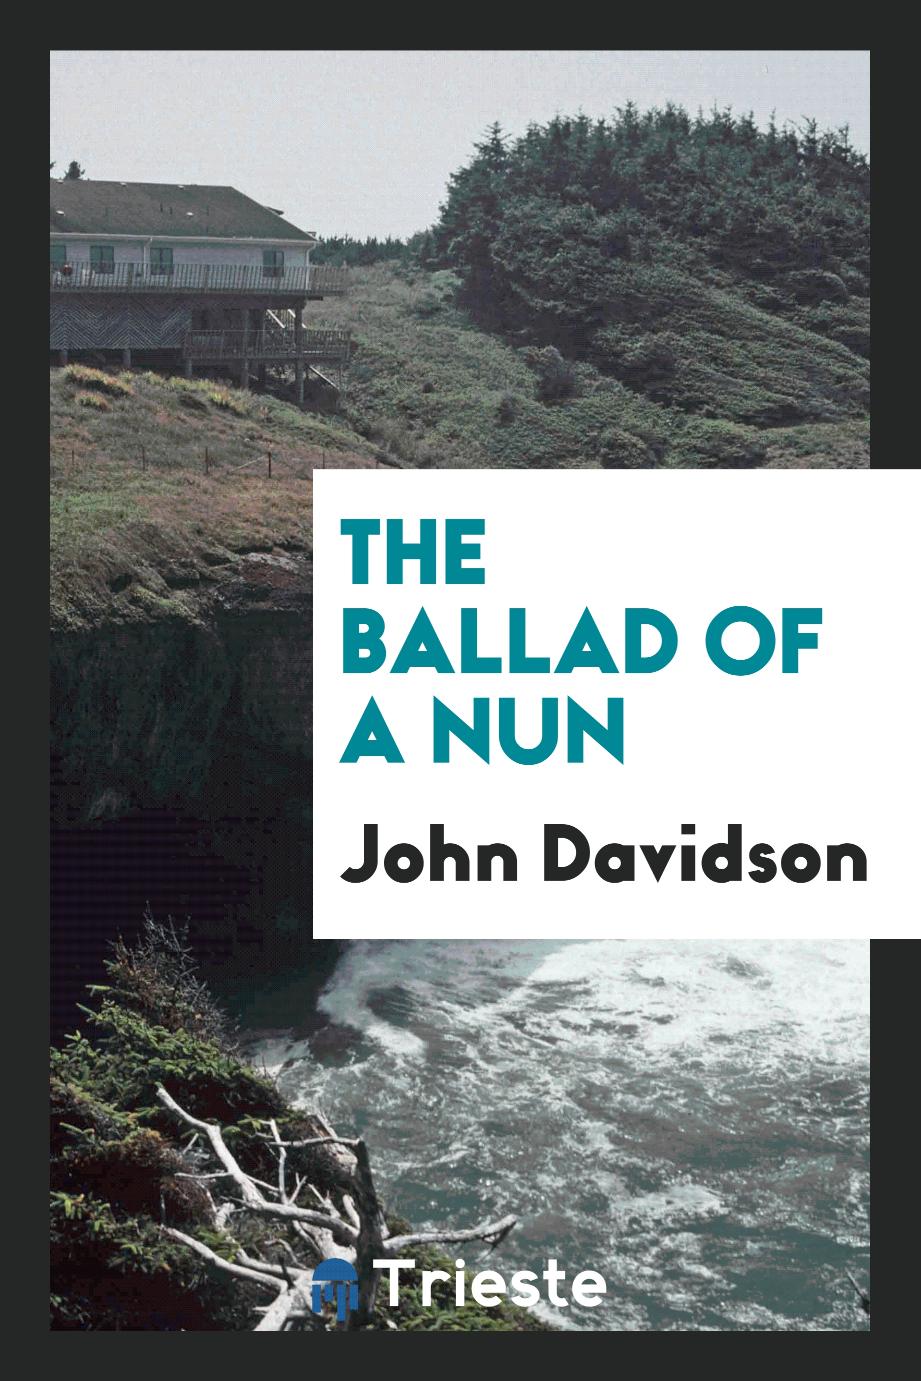 The Ballad of a Nun